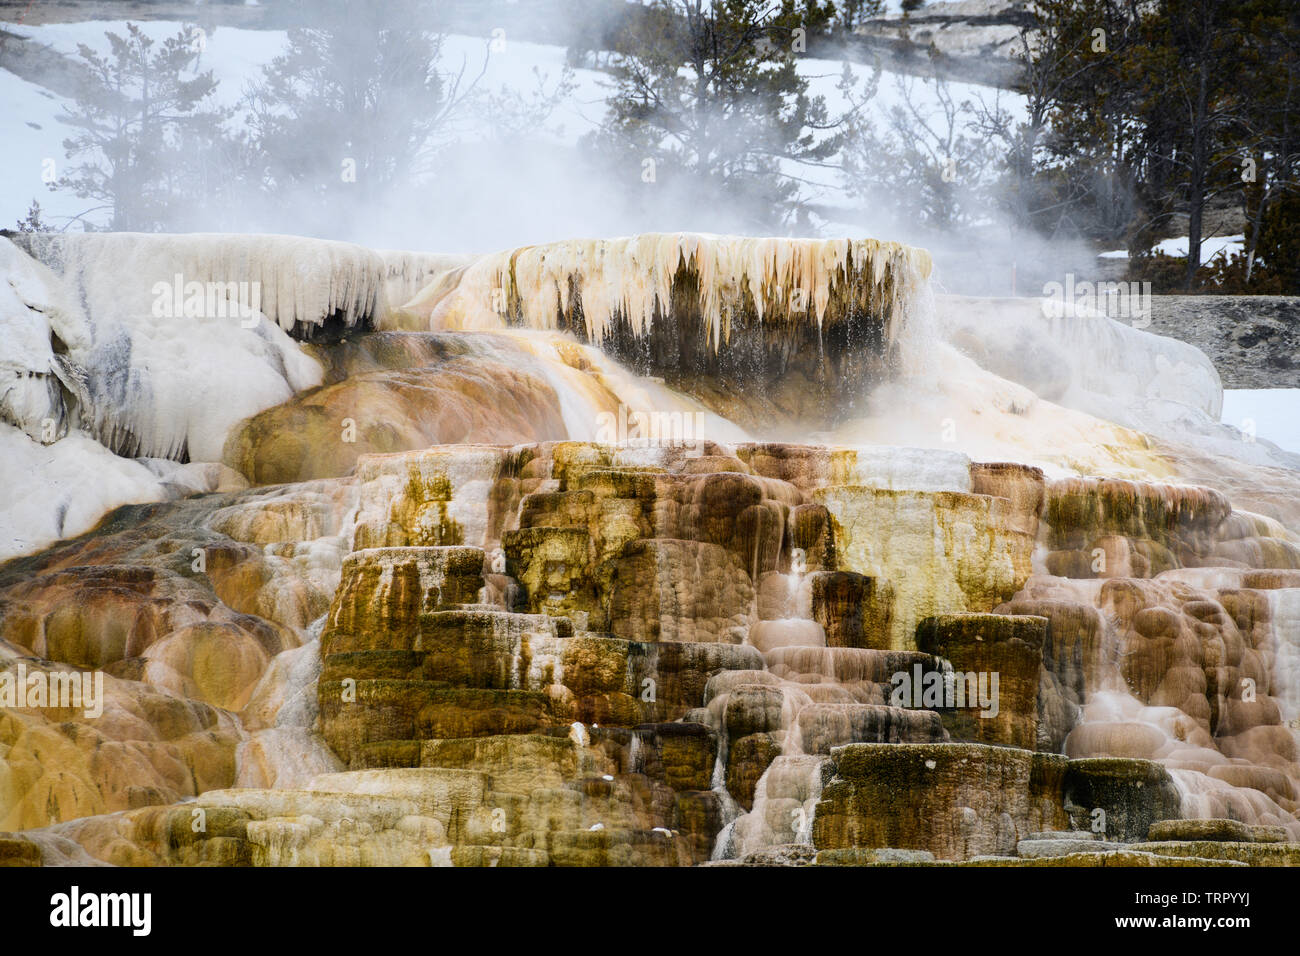 La formación de terrazas Mammoth Hot Springs cerca de la sede del Parque Nacional de Yellowstone, en Wyoming, en América del Norte. Foto de stock